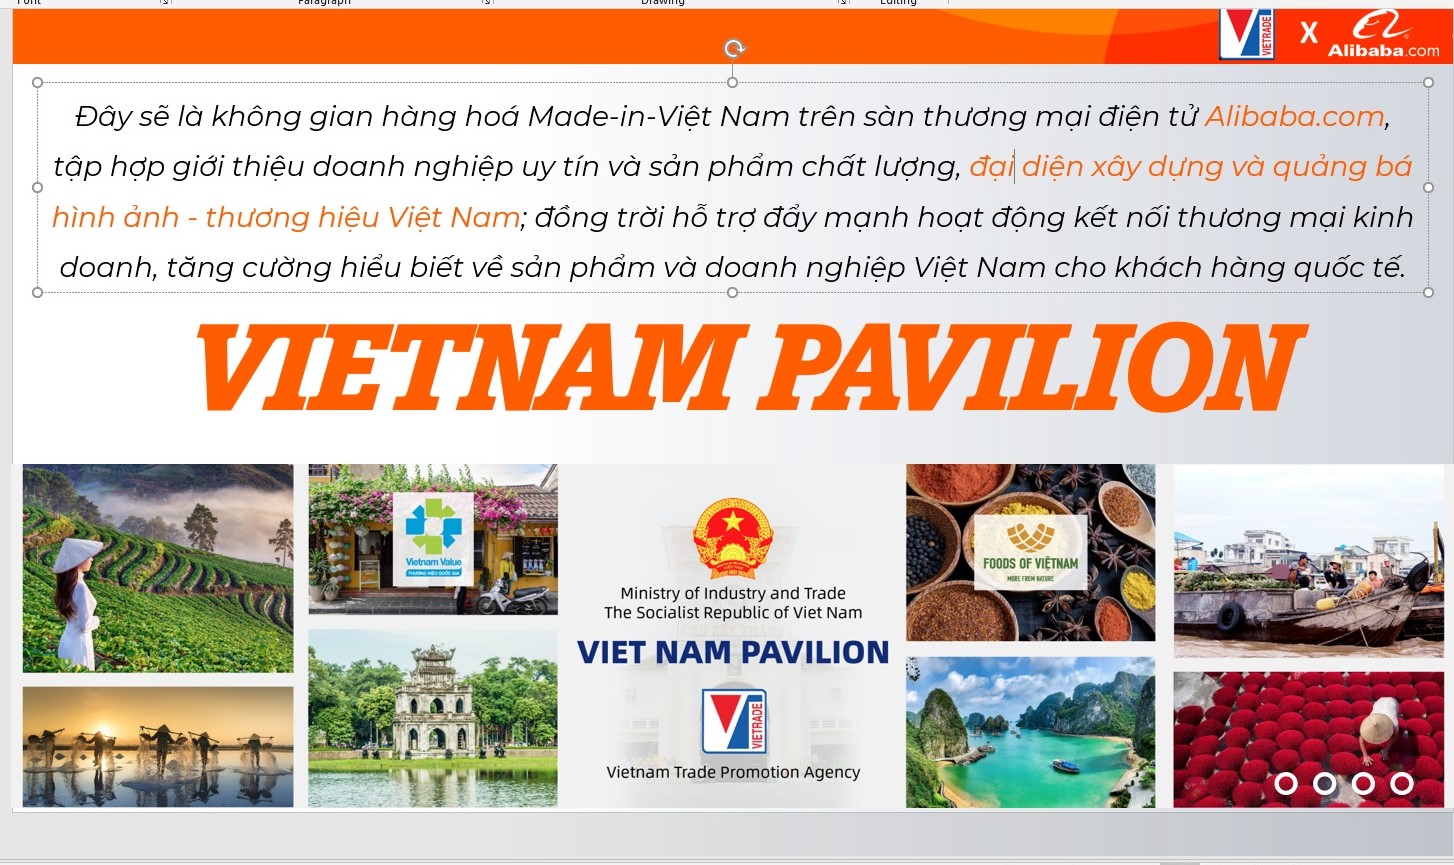 Ngành hàng nào được ưu tiên trên gian hàng quốc gia Việt Nam tại Alibaba.com? - Ảnh 2.